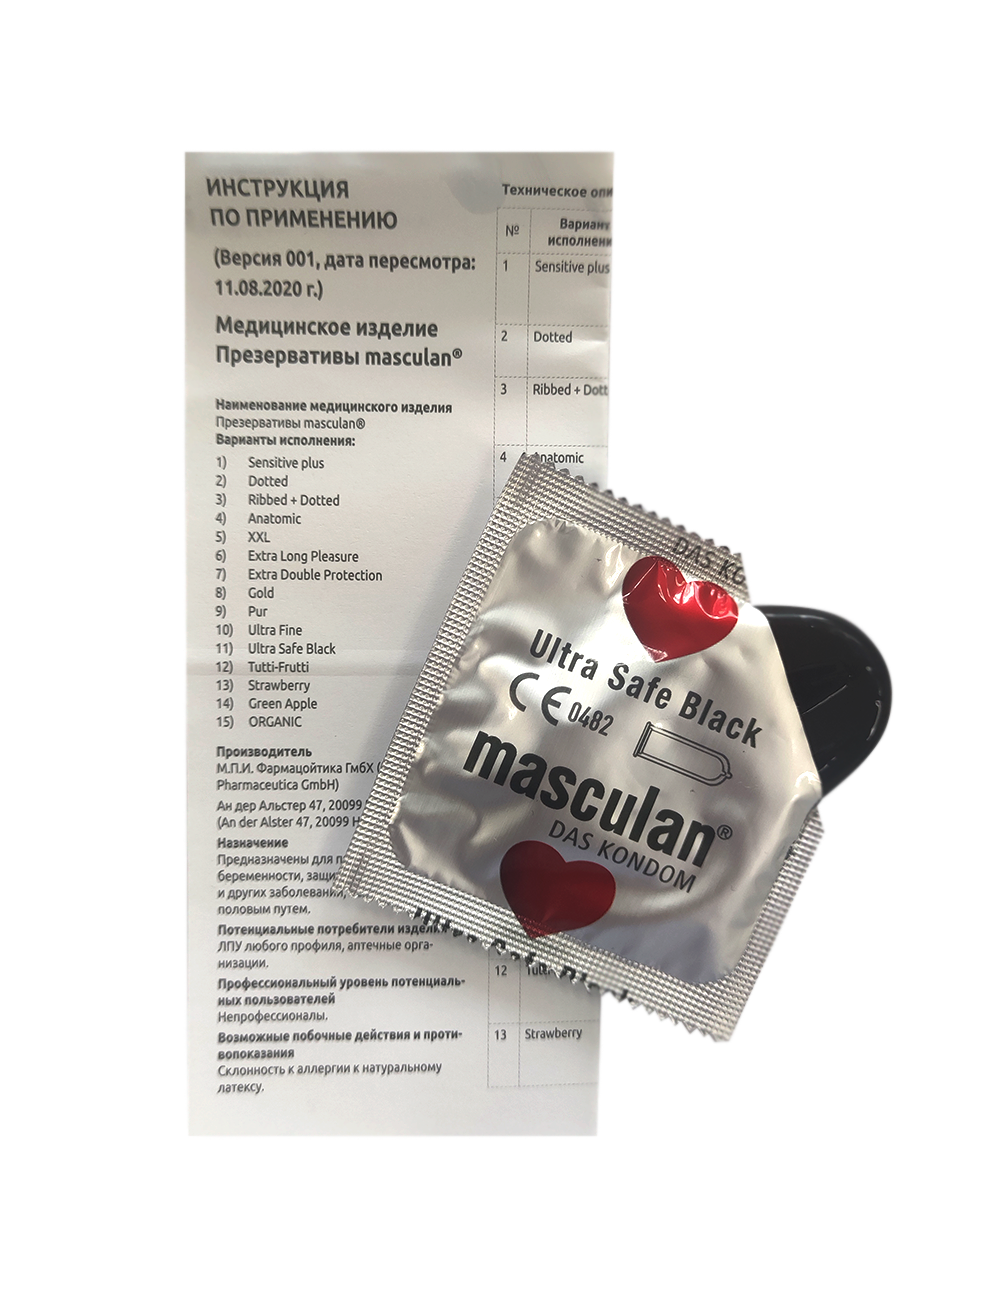 Презервативы Masculan Ultra Safe Black №10, 2 упаковки (20 презервативов, ультрапрочные, черного цвета)